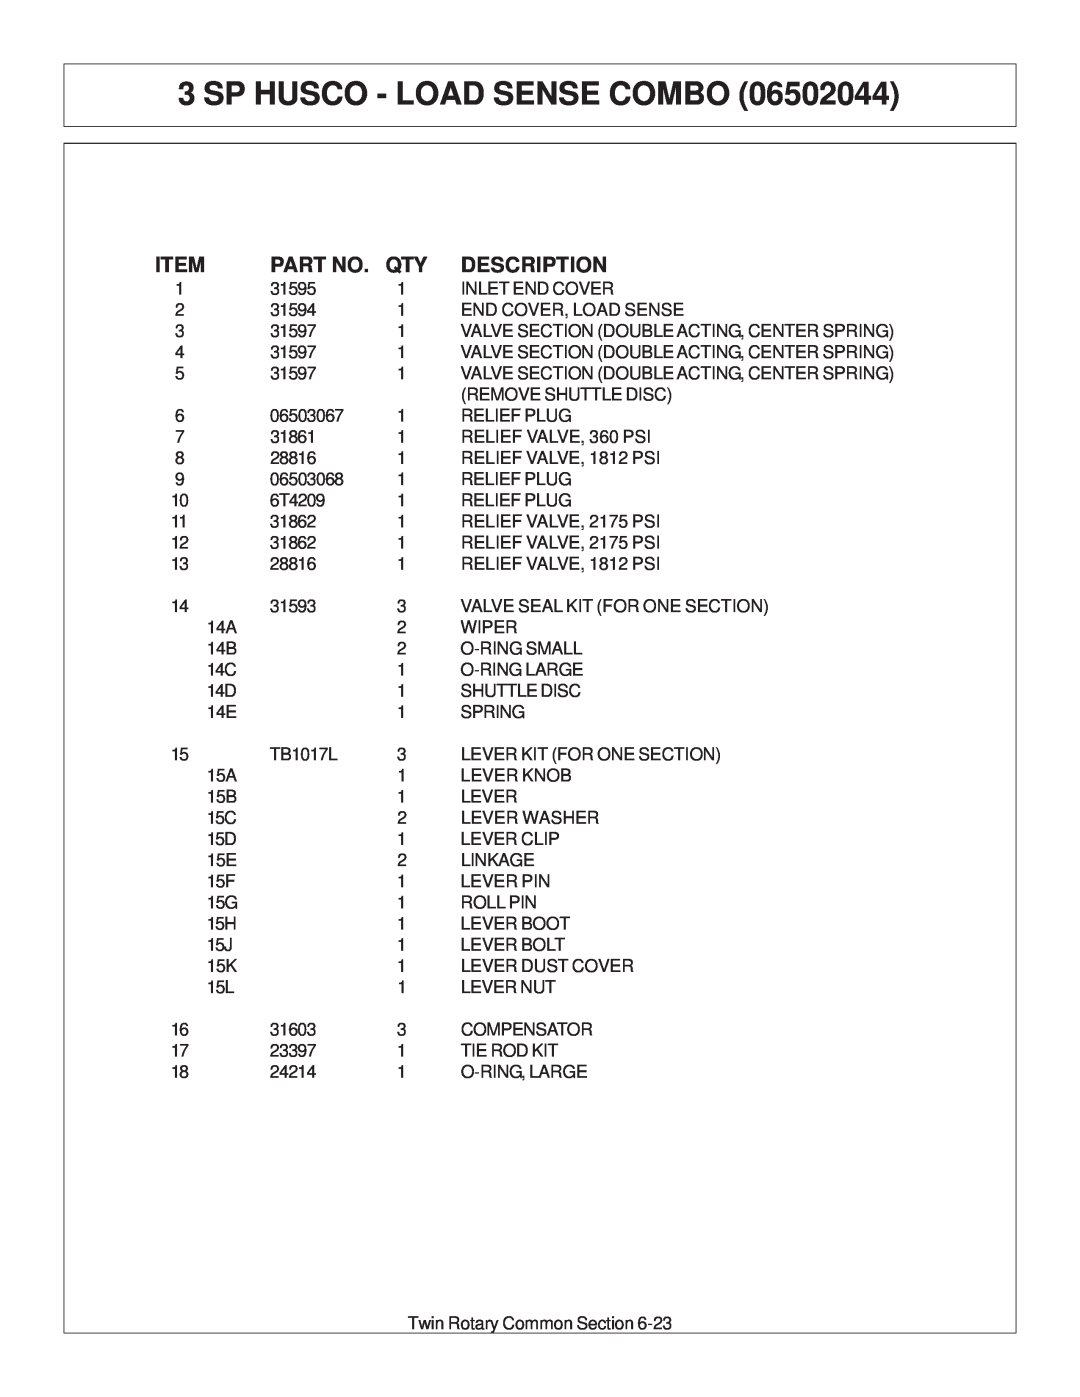 Tiger Products Co., Ltd JD 72-7520 manual Sp Husco - Load Sense Combo, Description 